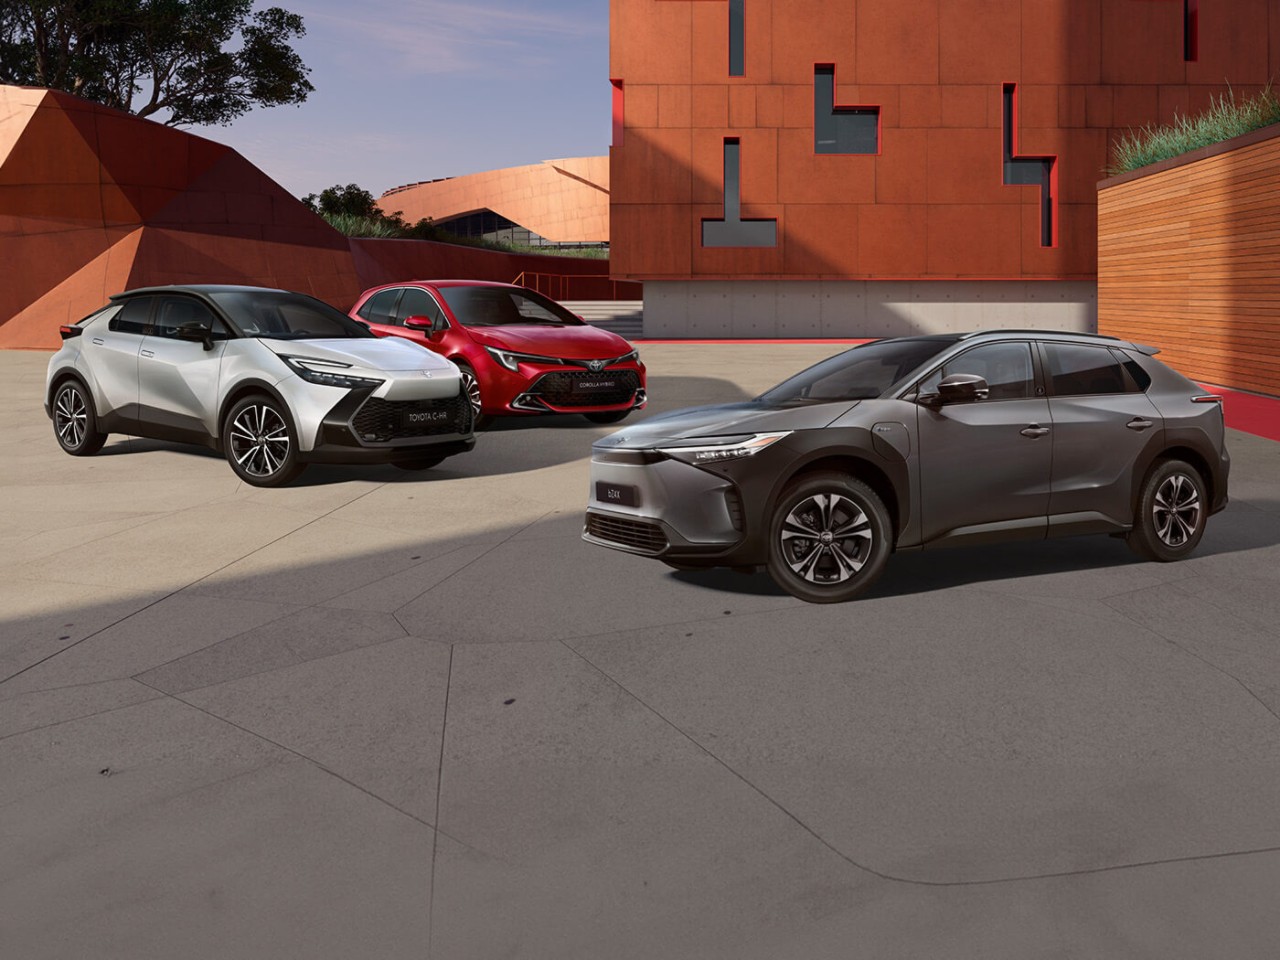 Toyota Team Deutschland Modelle stehen vor einem roten Gebäude